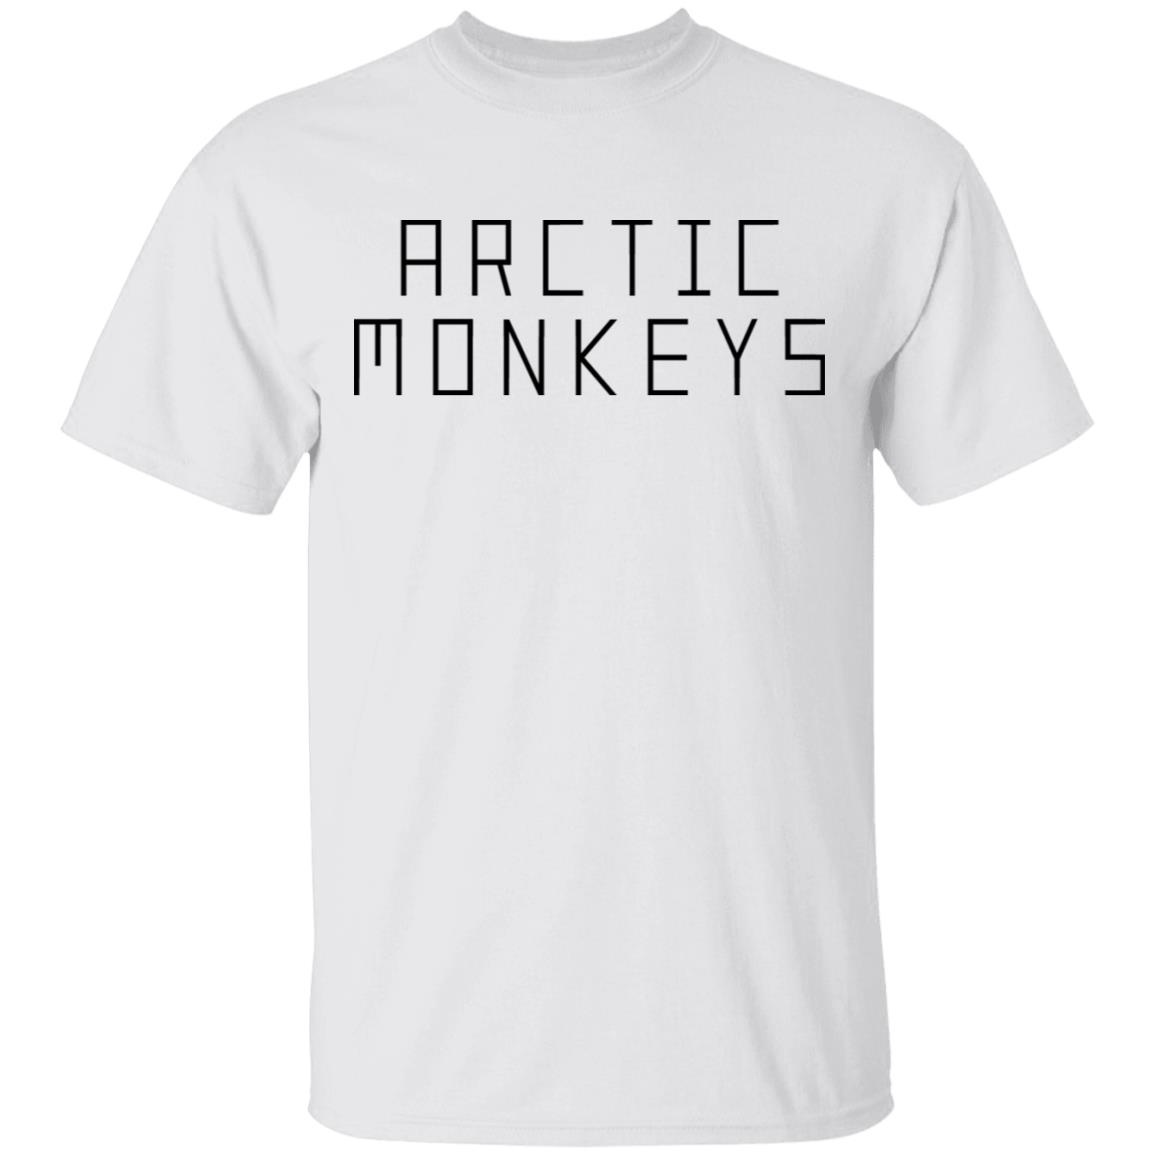 arctic monkeys t shirt 2018